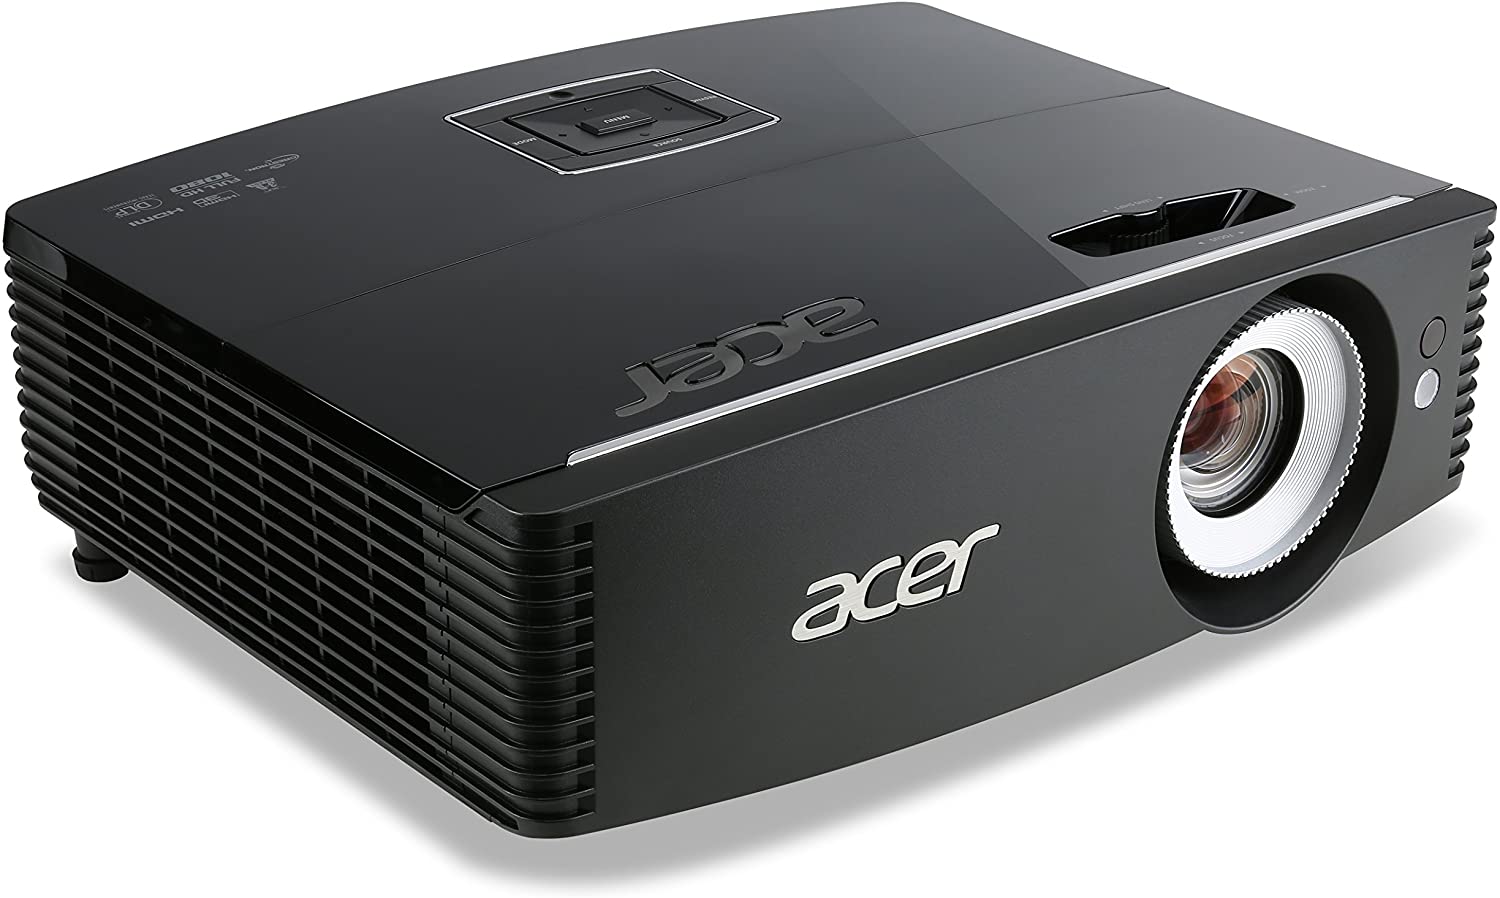 Acer P6500 DLP